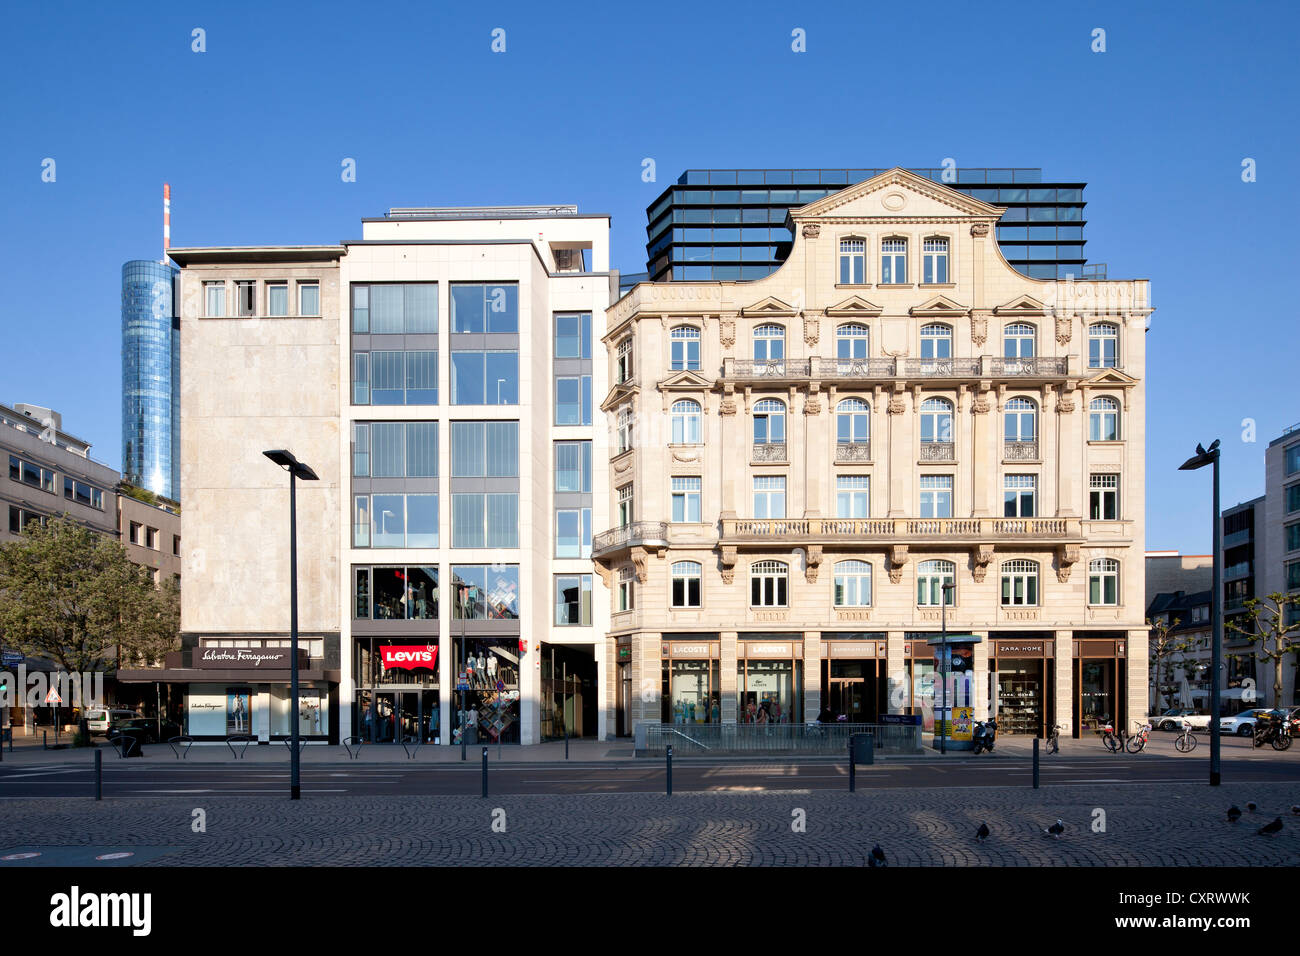 Oficinas y edificios en venta Rathenauplatz plaza, Frankfurt am Main, Hesse, Alemania, Europa, PublicGround Foto de stock